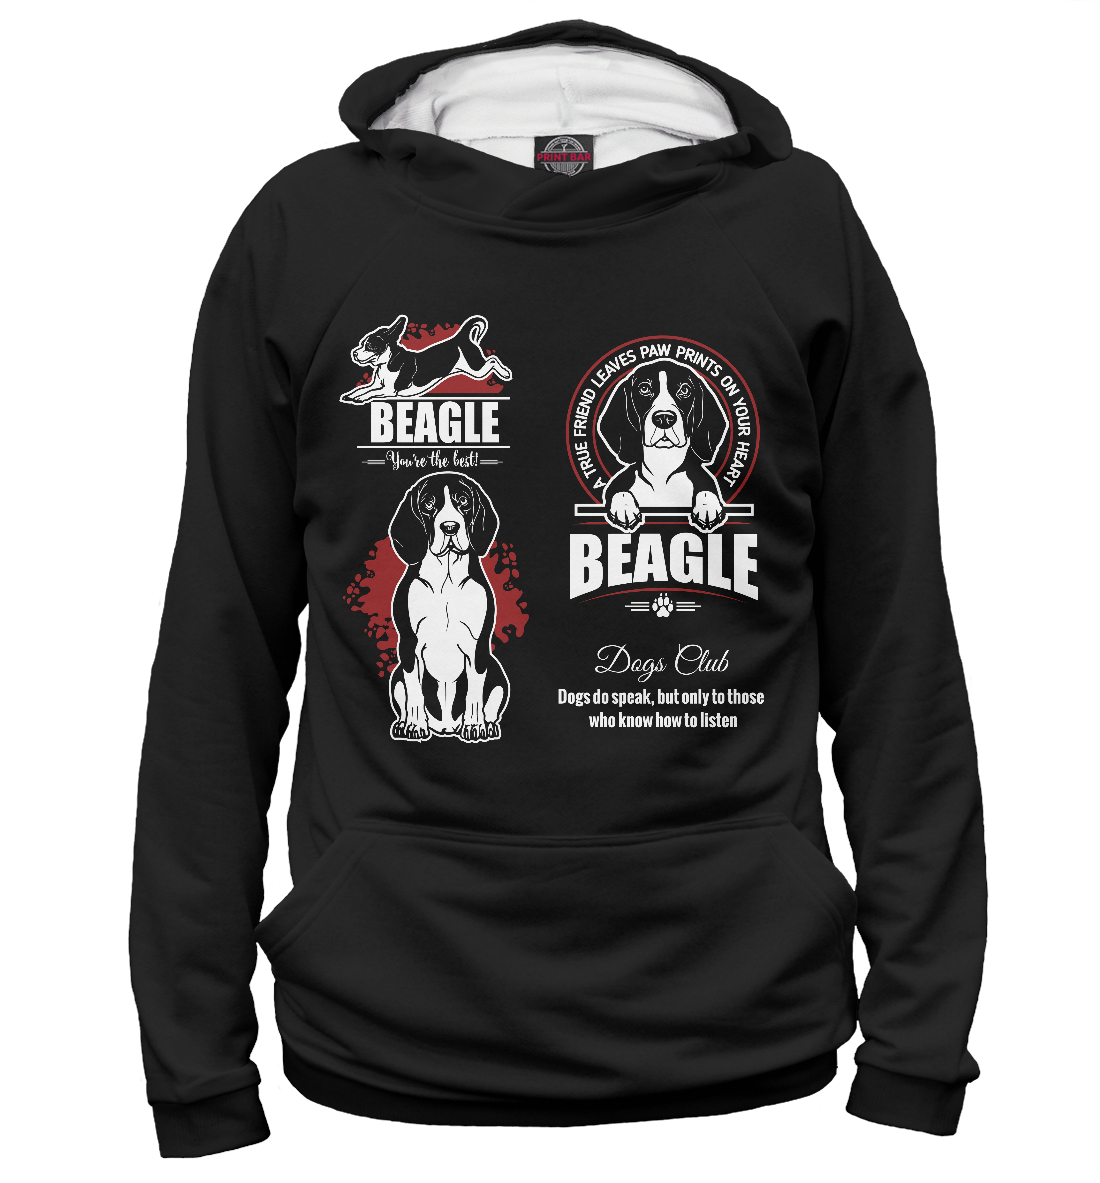 Beagle beagle beagle security